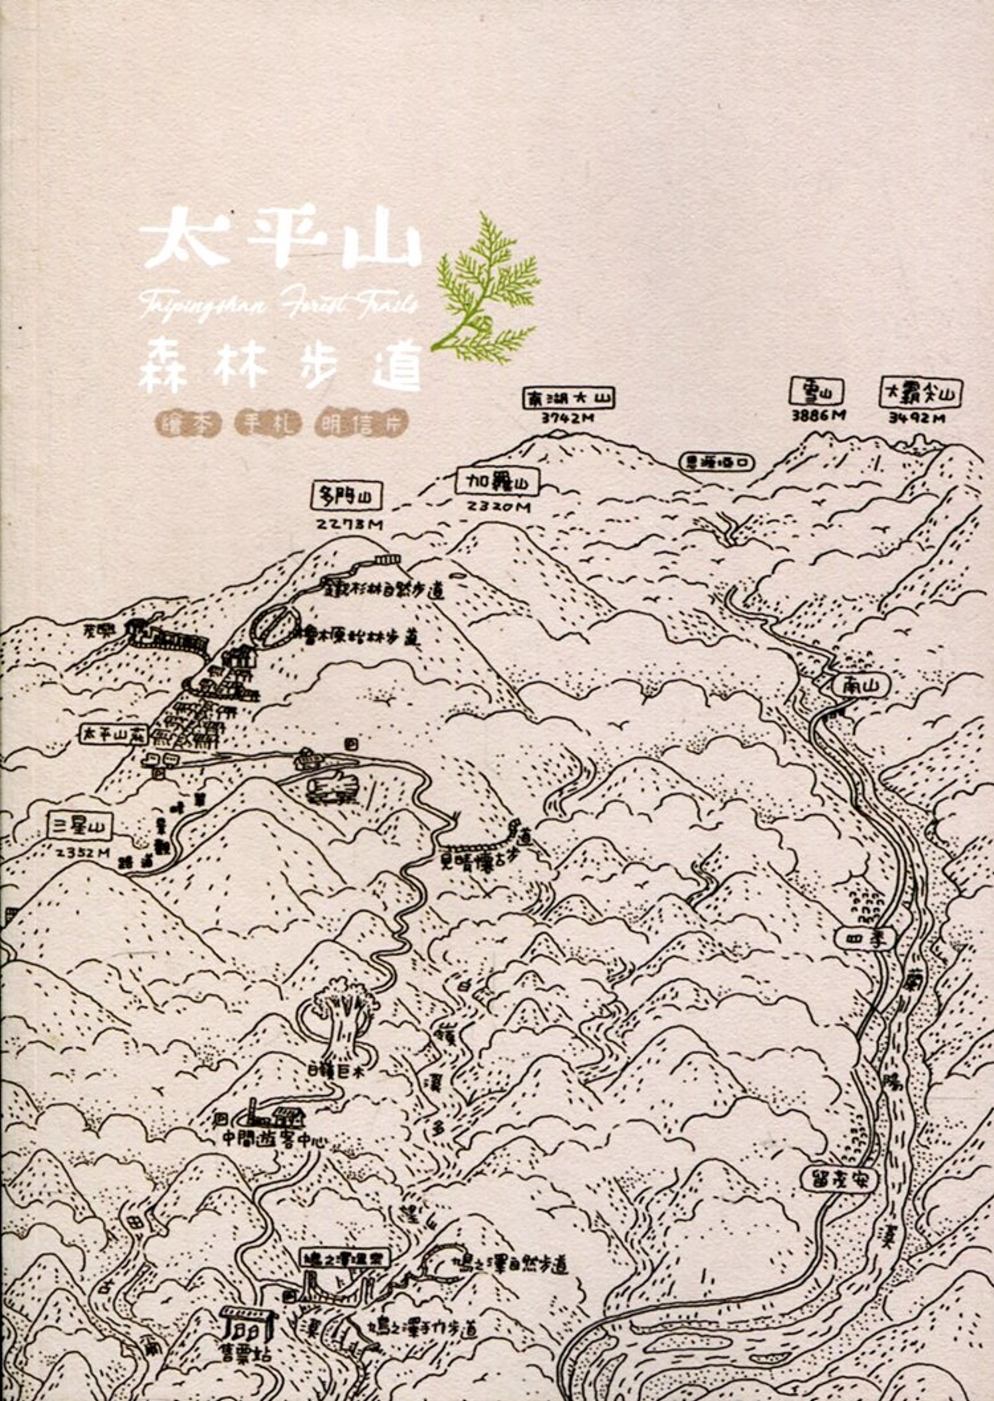 太平山森林步道繪本手札明信片